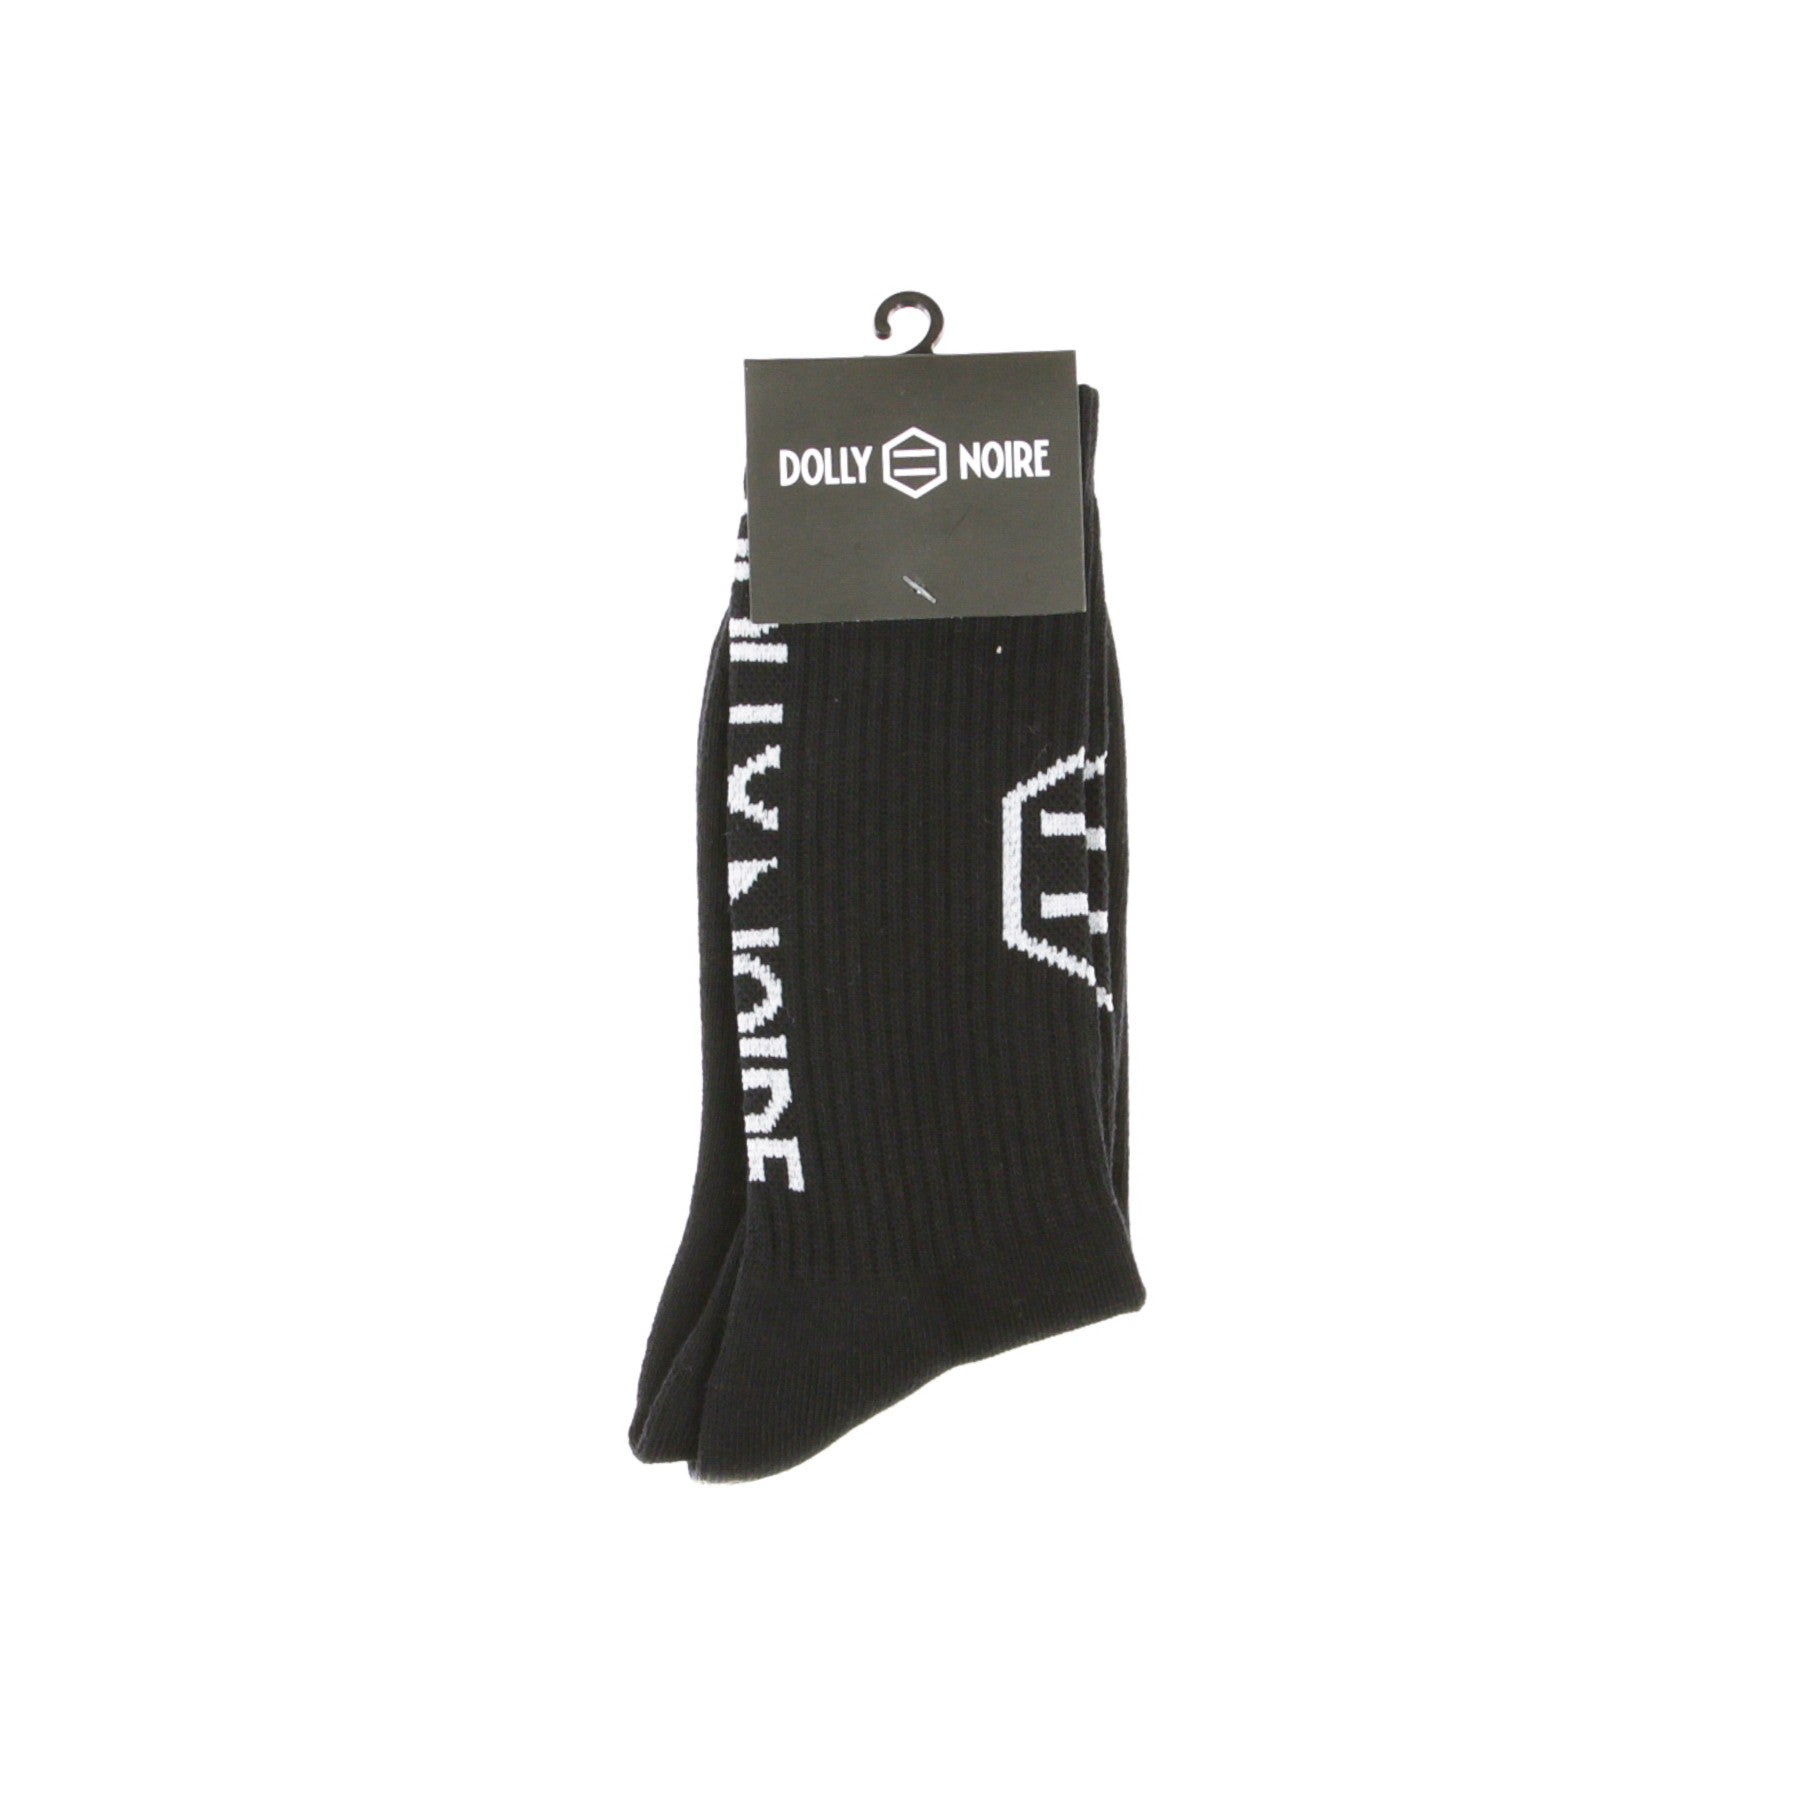 Dolly Noire, Calza Media Uomo Vertical Logo Socks, Black/white